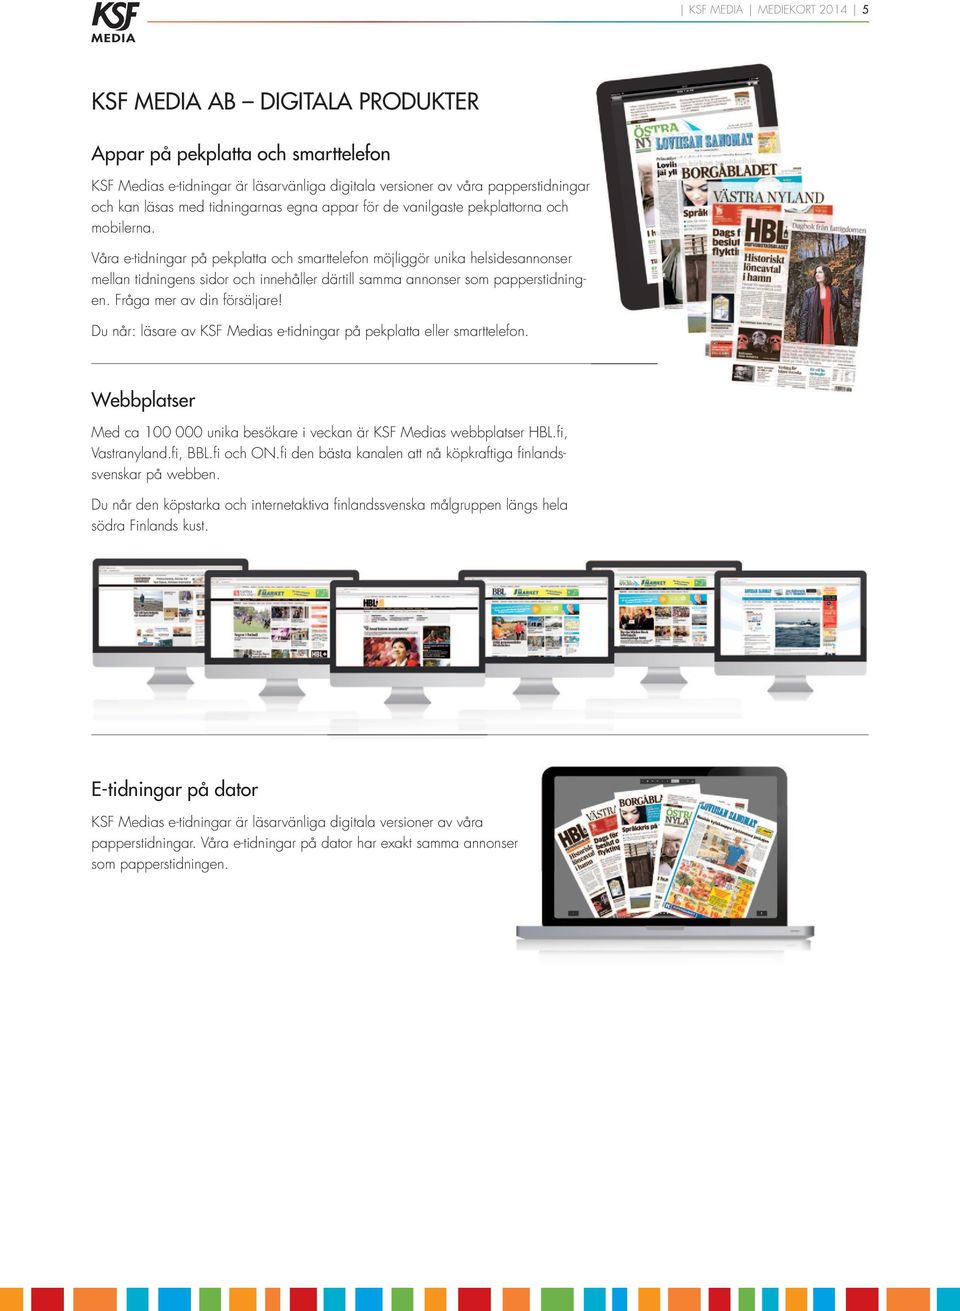 Våra e-tidningar på pekplatta och smarttelefon möjliggör unika helsidesannonser mellan tidningens sidor och innehåller därtill samma annonser som papperstidningen. Fråga mer av din försäljare!